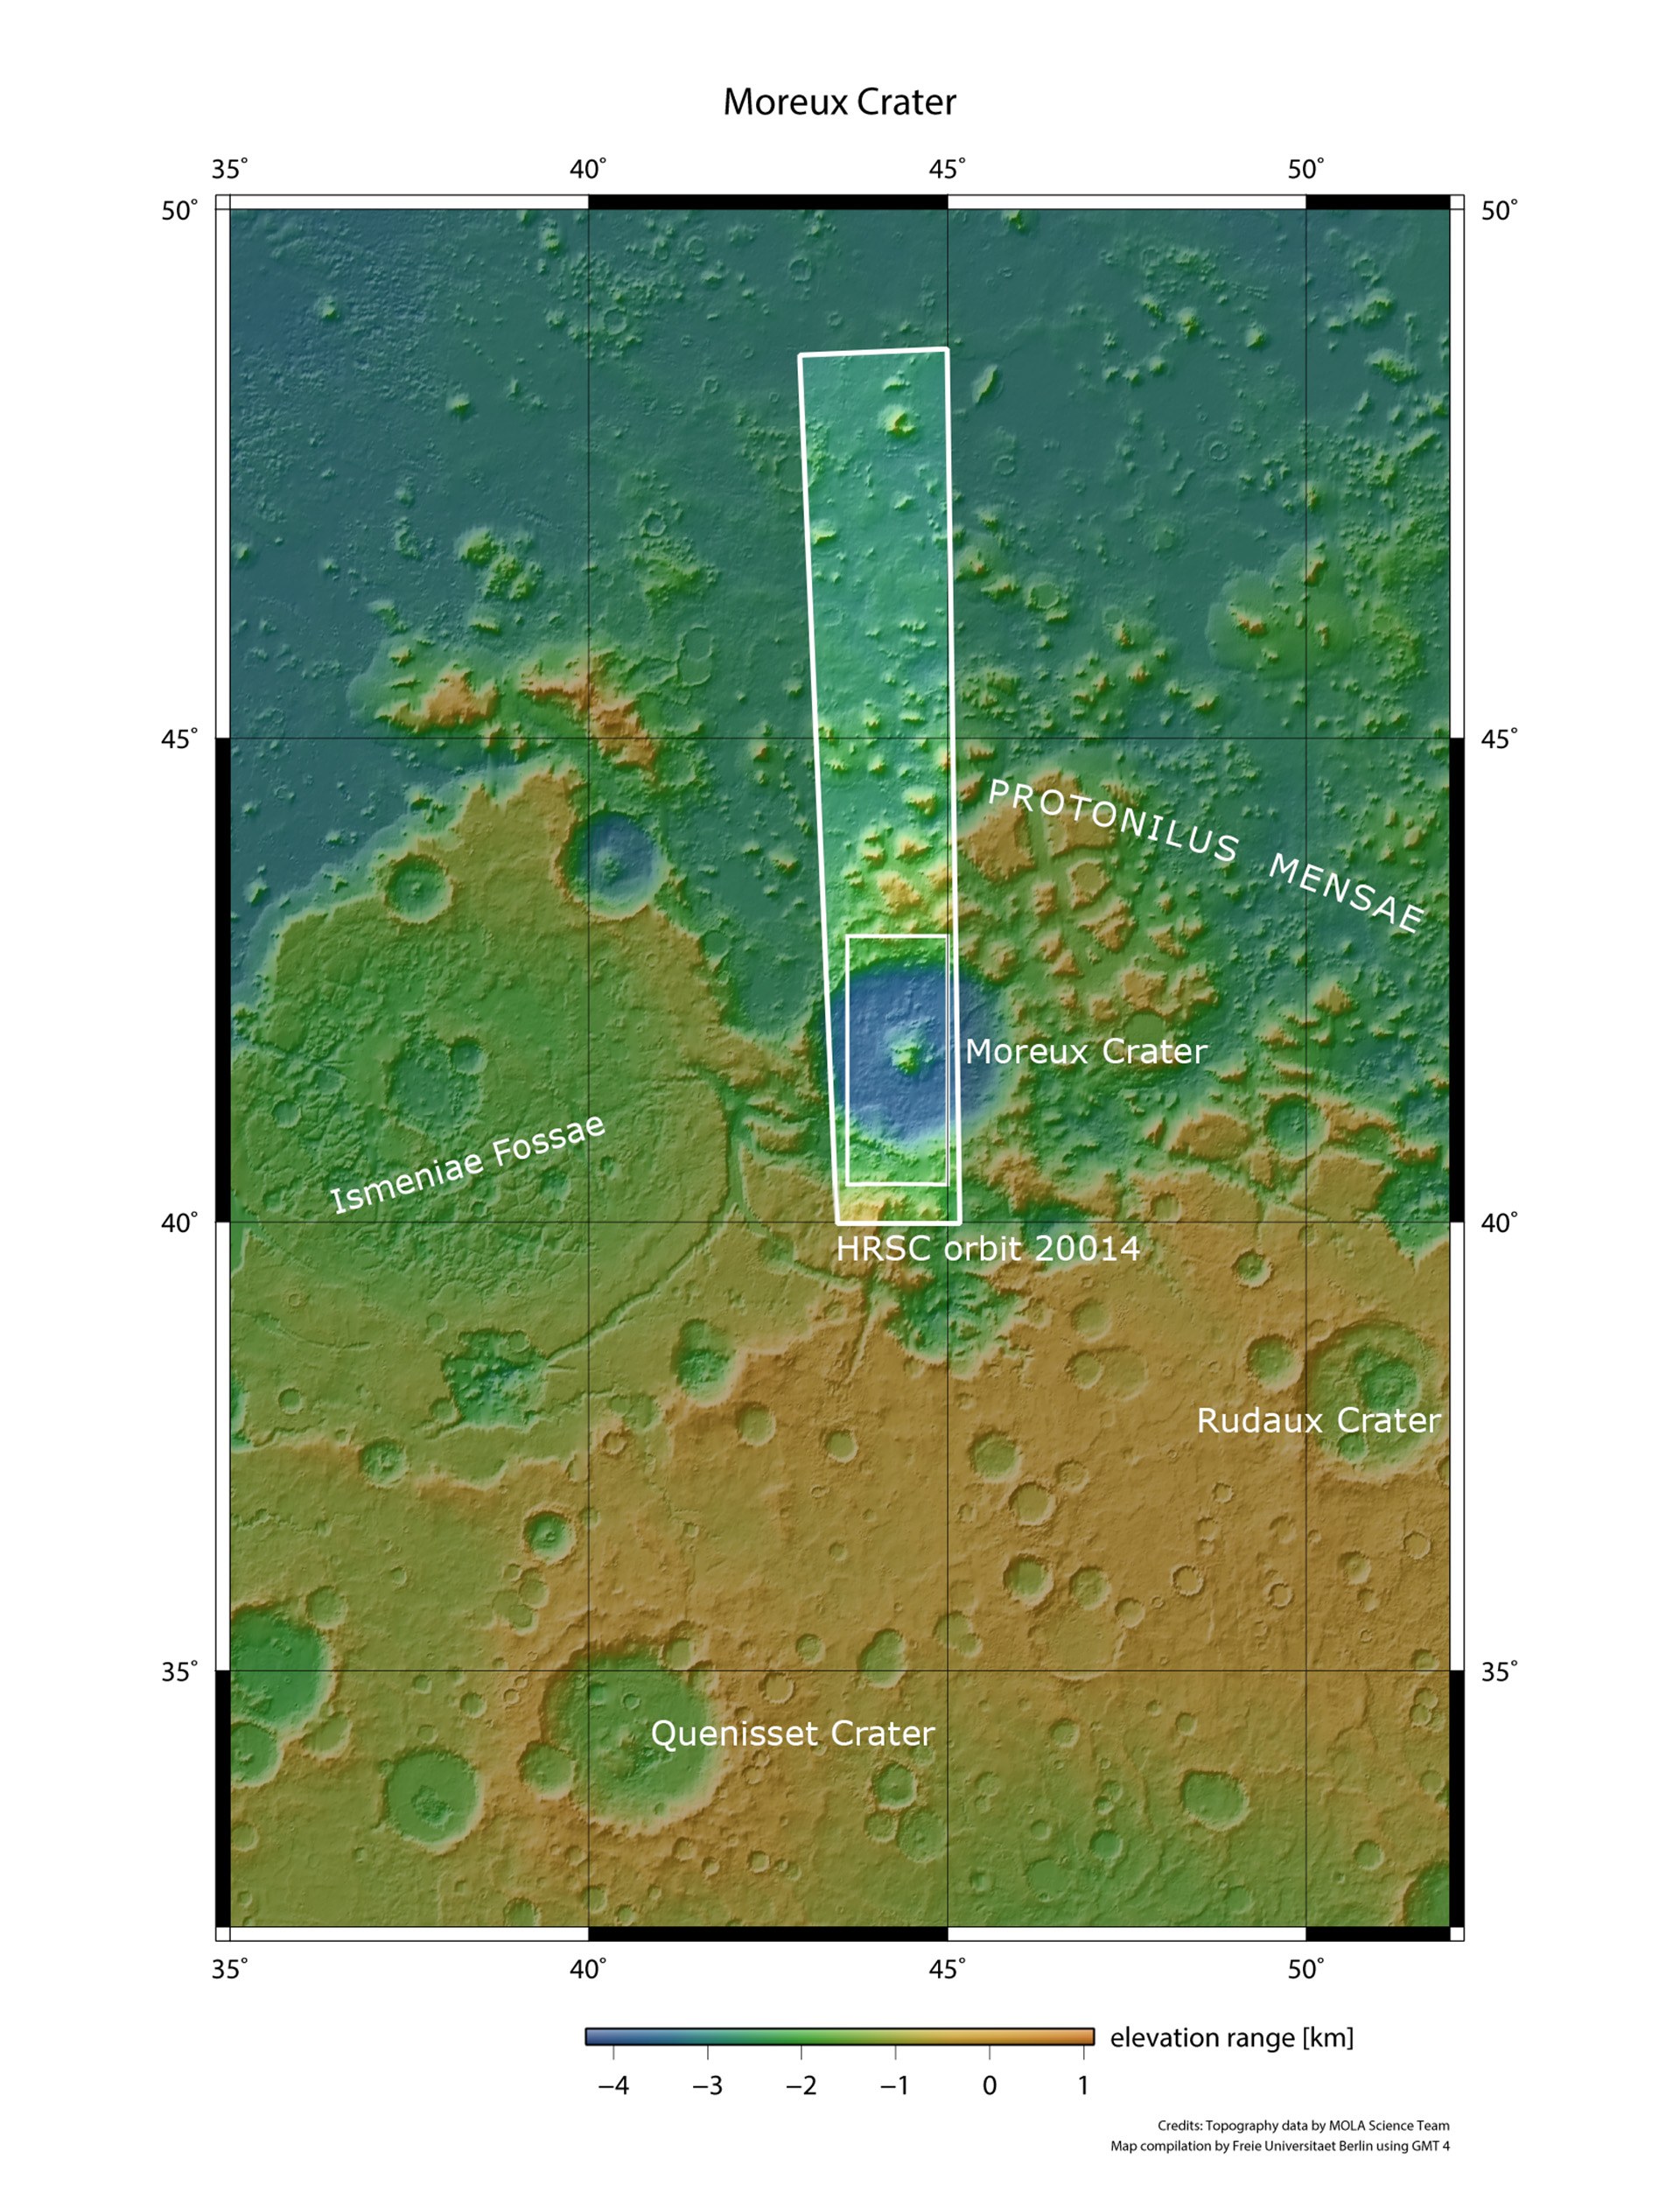 Protonilus Mensae, Mars: Übergangszone zwischen Hoch- und Tiefland